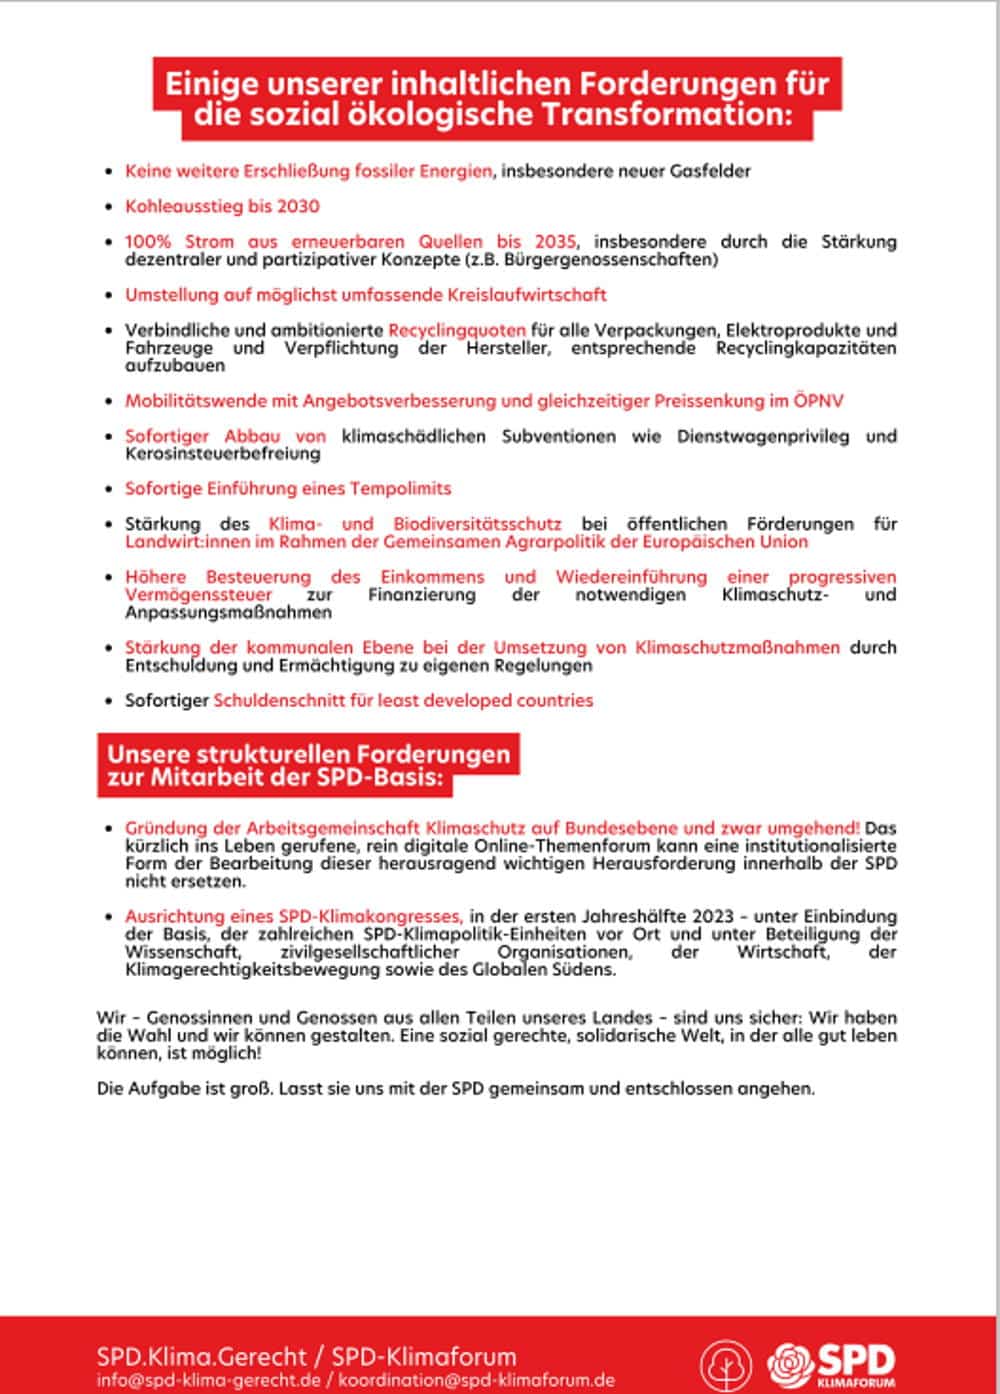 Der Offene Brief an Olaf Scholz, Seite 2.  Quelle: SPD.Klima.Gerecht 